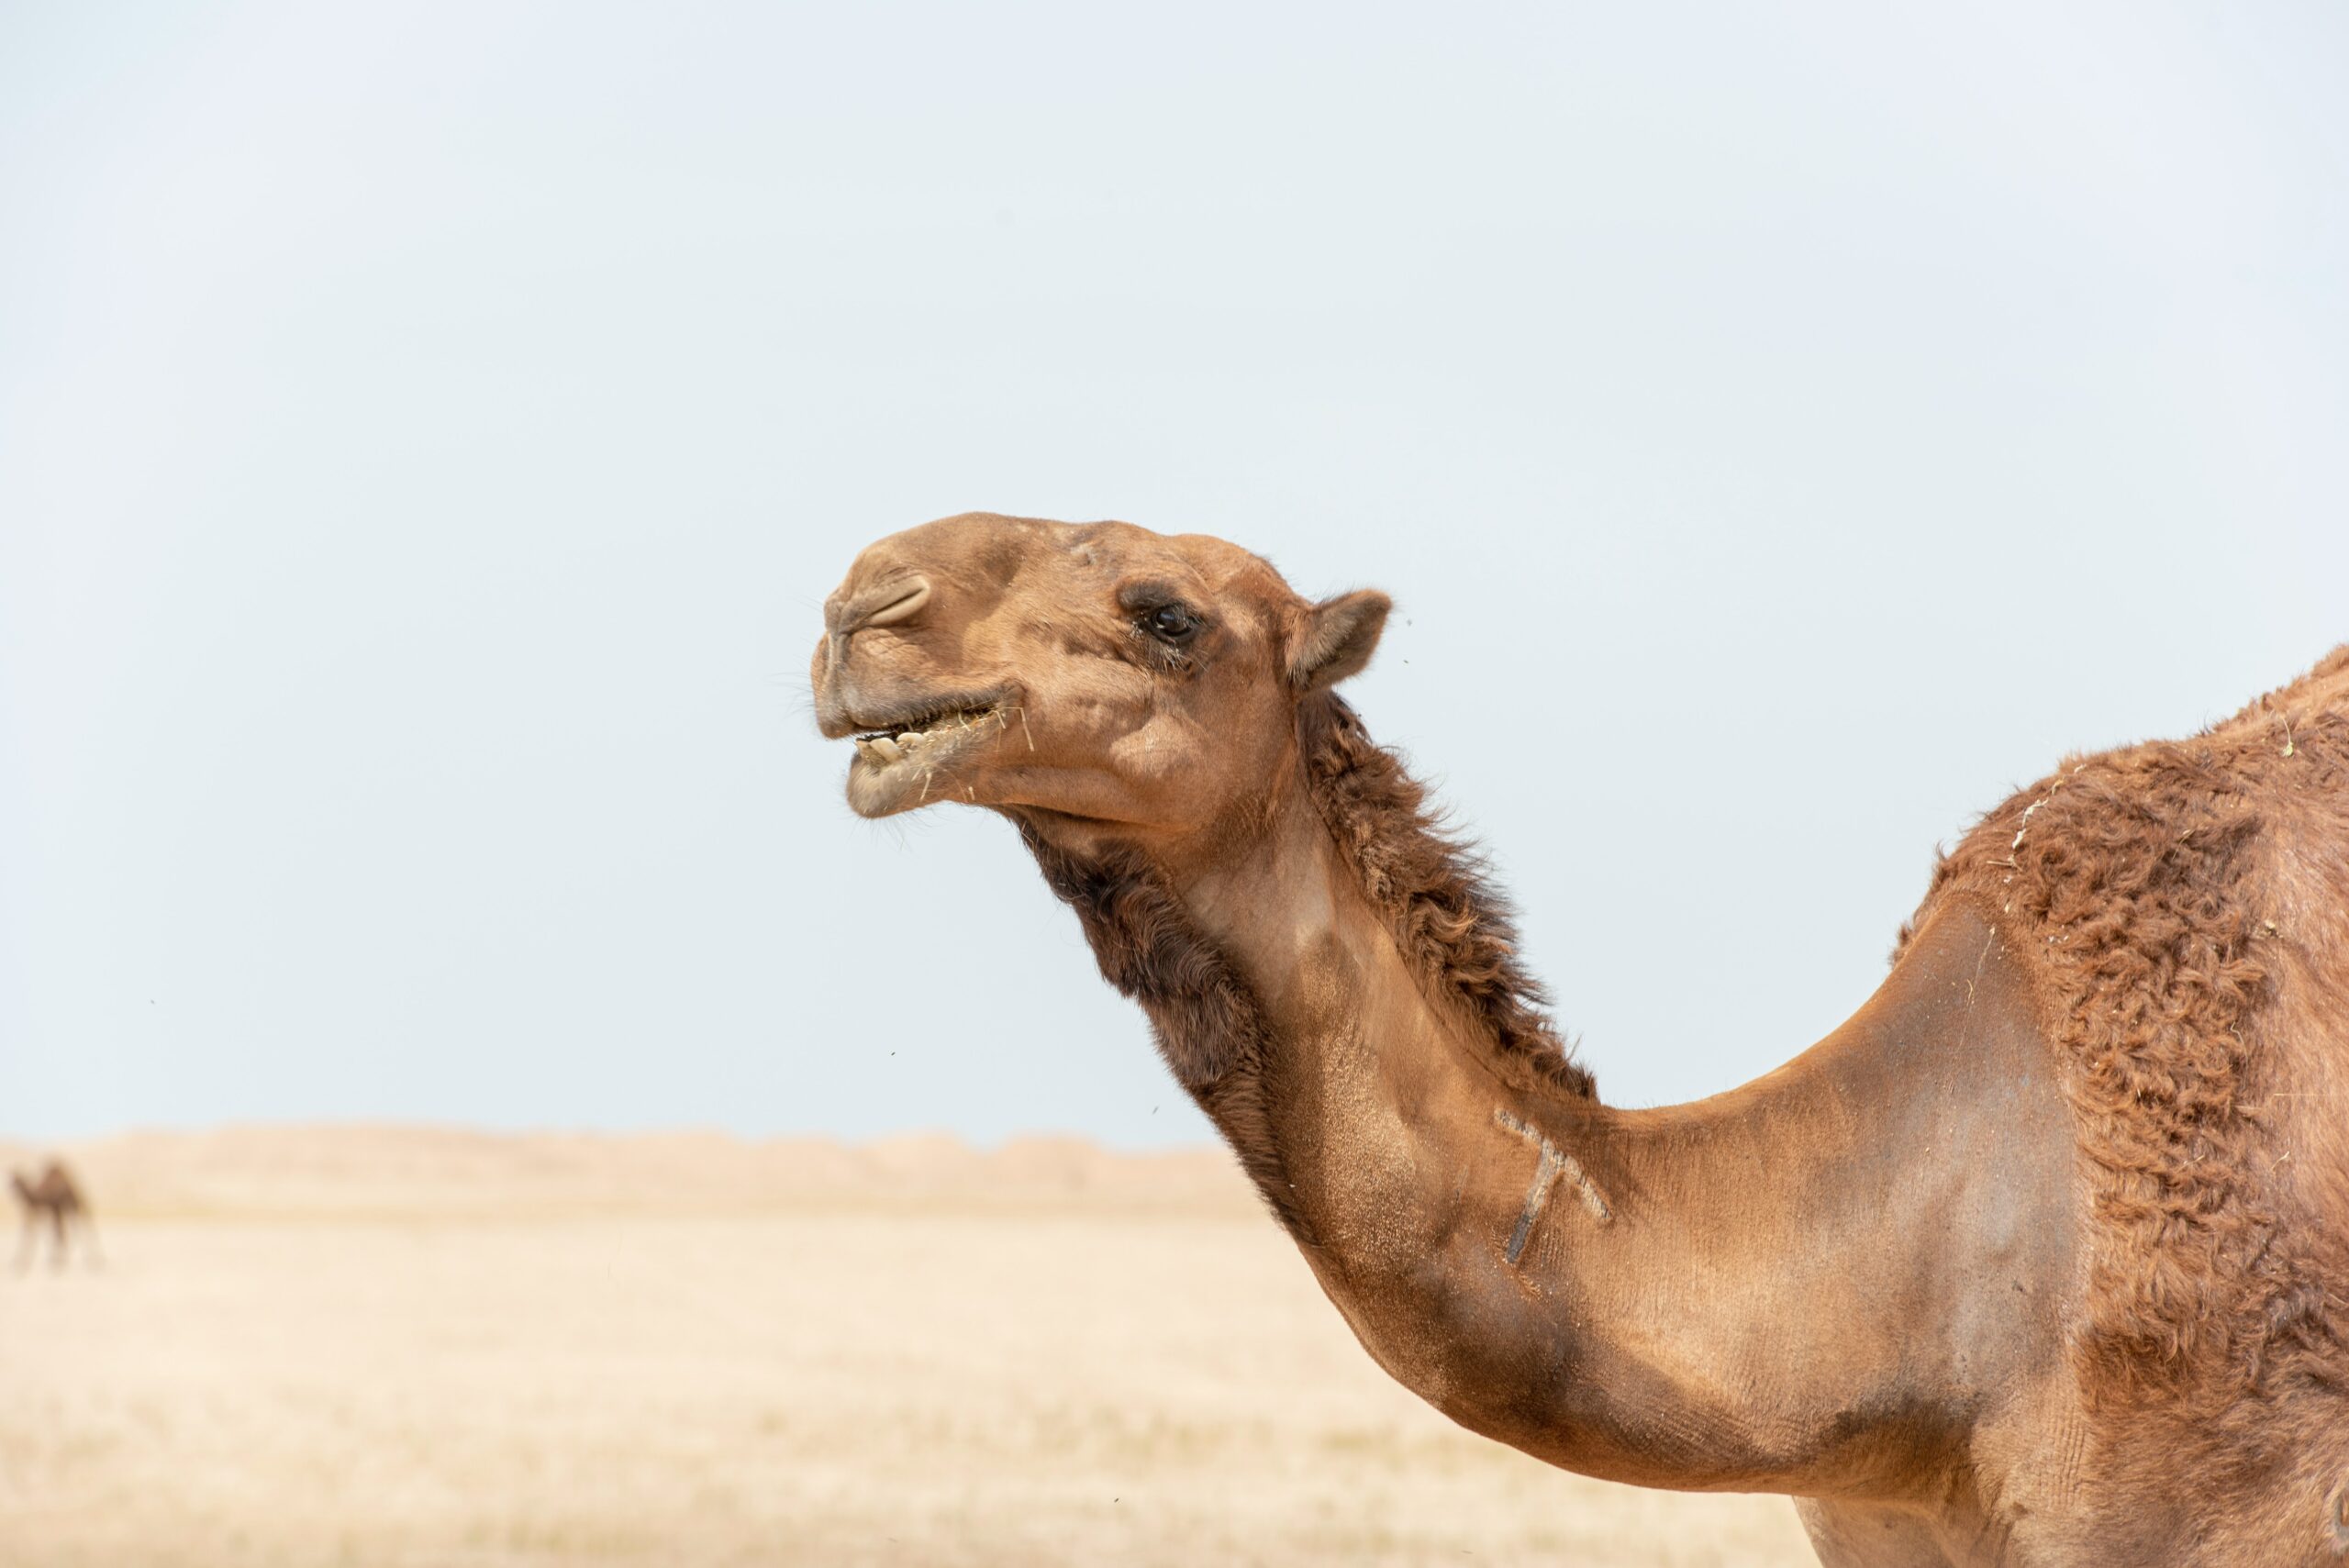 La gripe del camello (MERS), una enfermedad más mortal que el Covid 19, podría propagarse por el mundo a causa de la Copa del Mundo